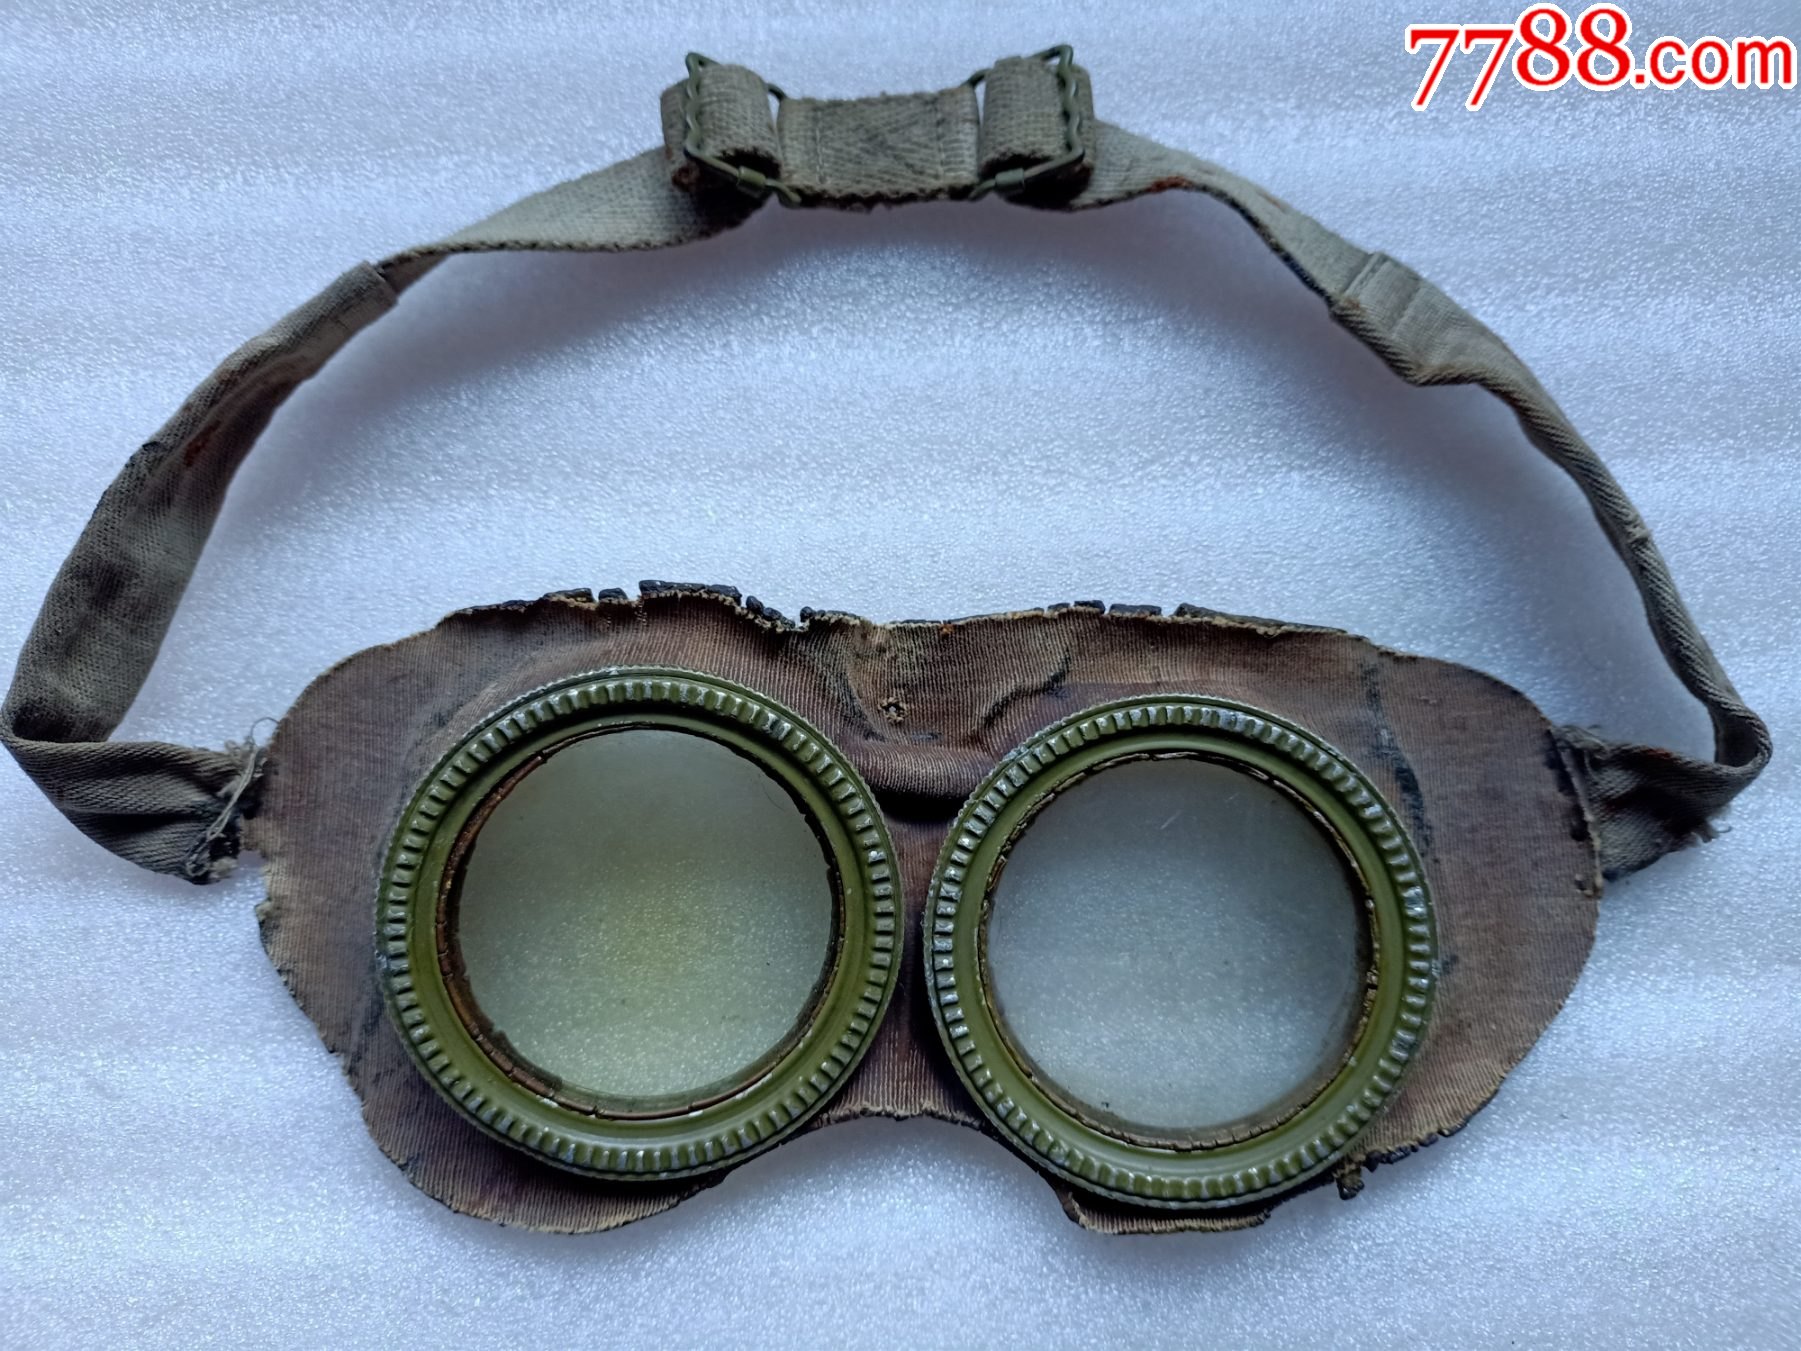 二战时期空军飞行员用的眼镜a400,镜片可以卸下来,胶老货,瑕疵如图